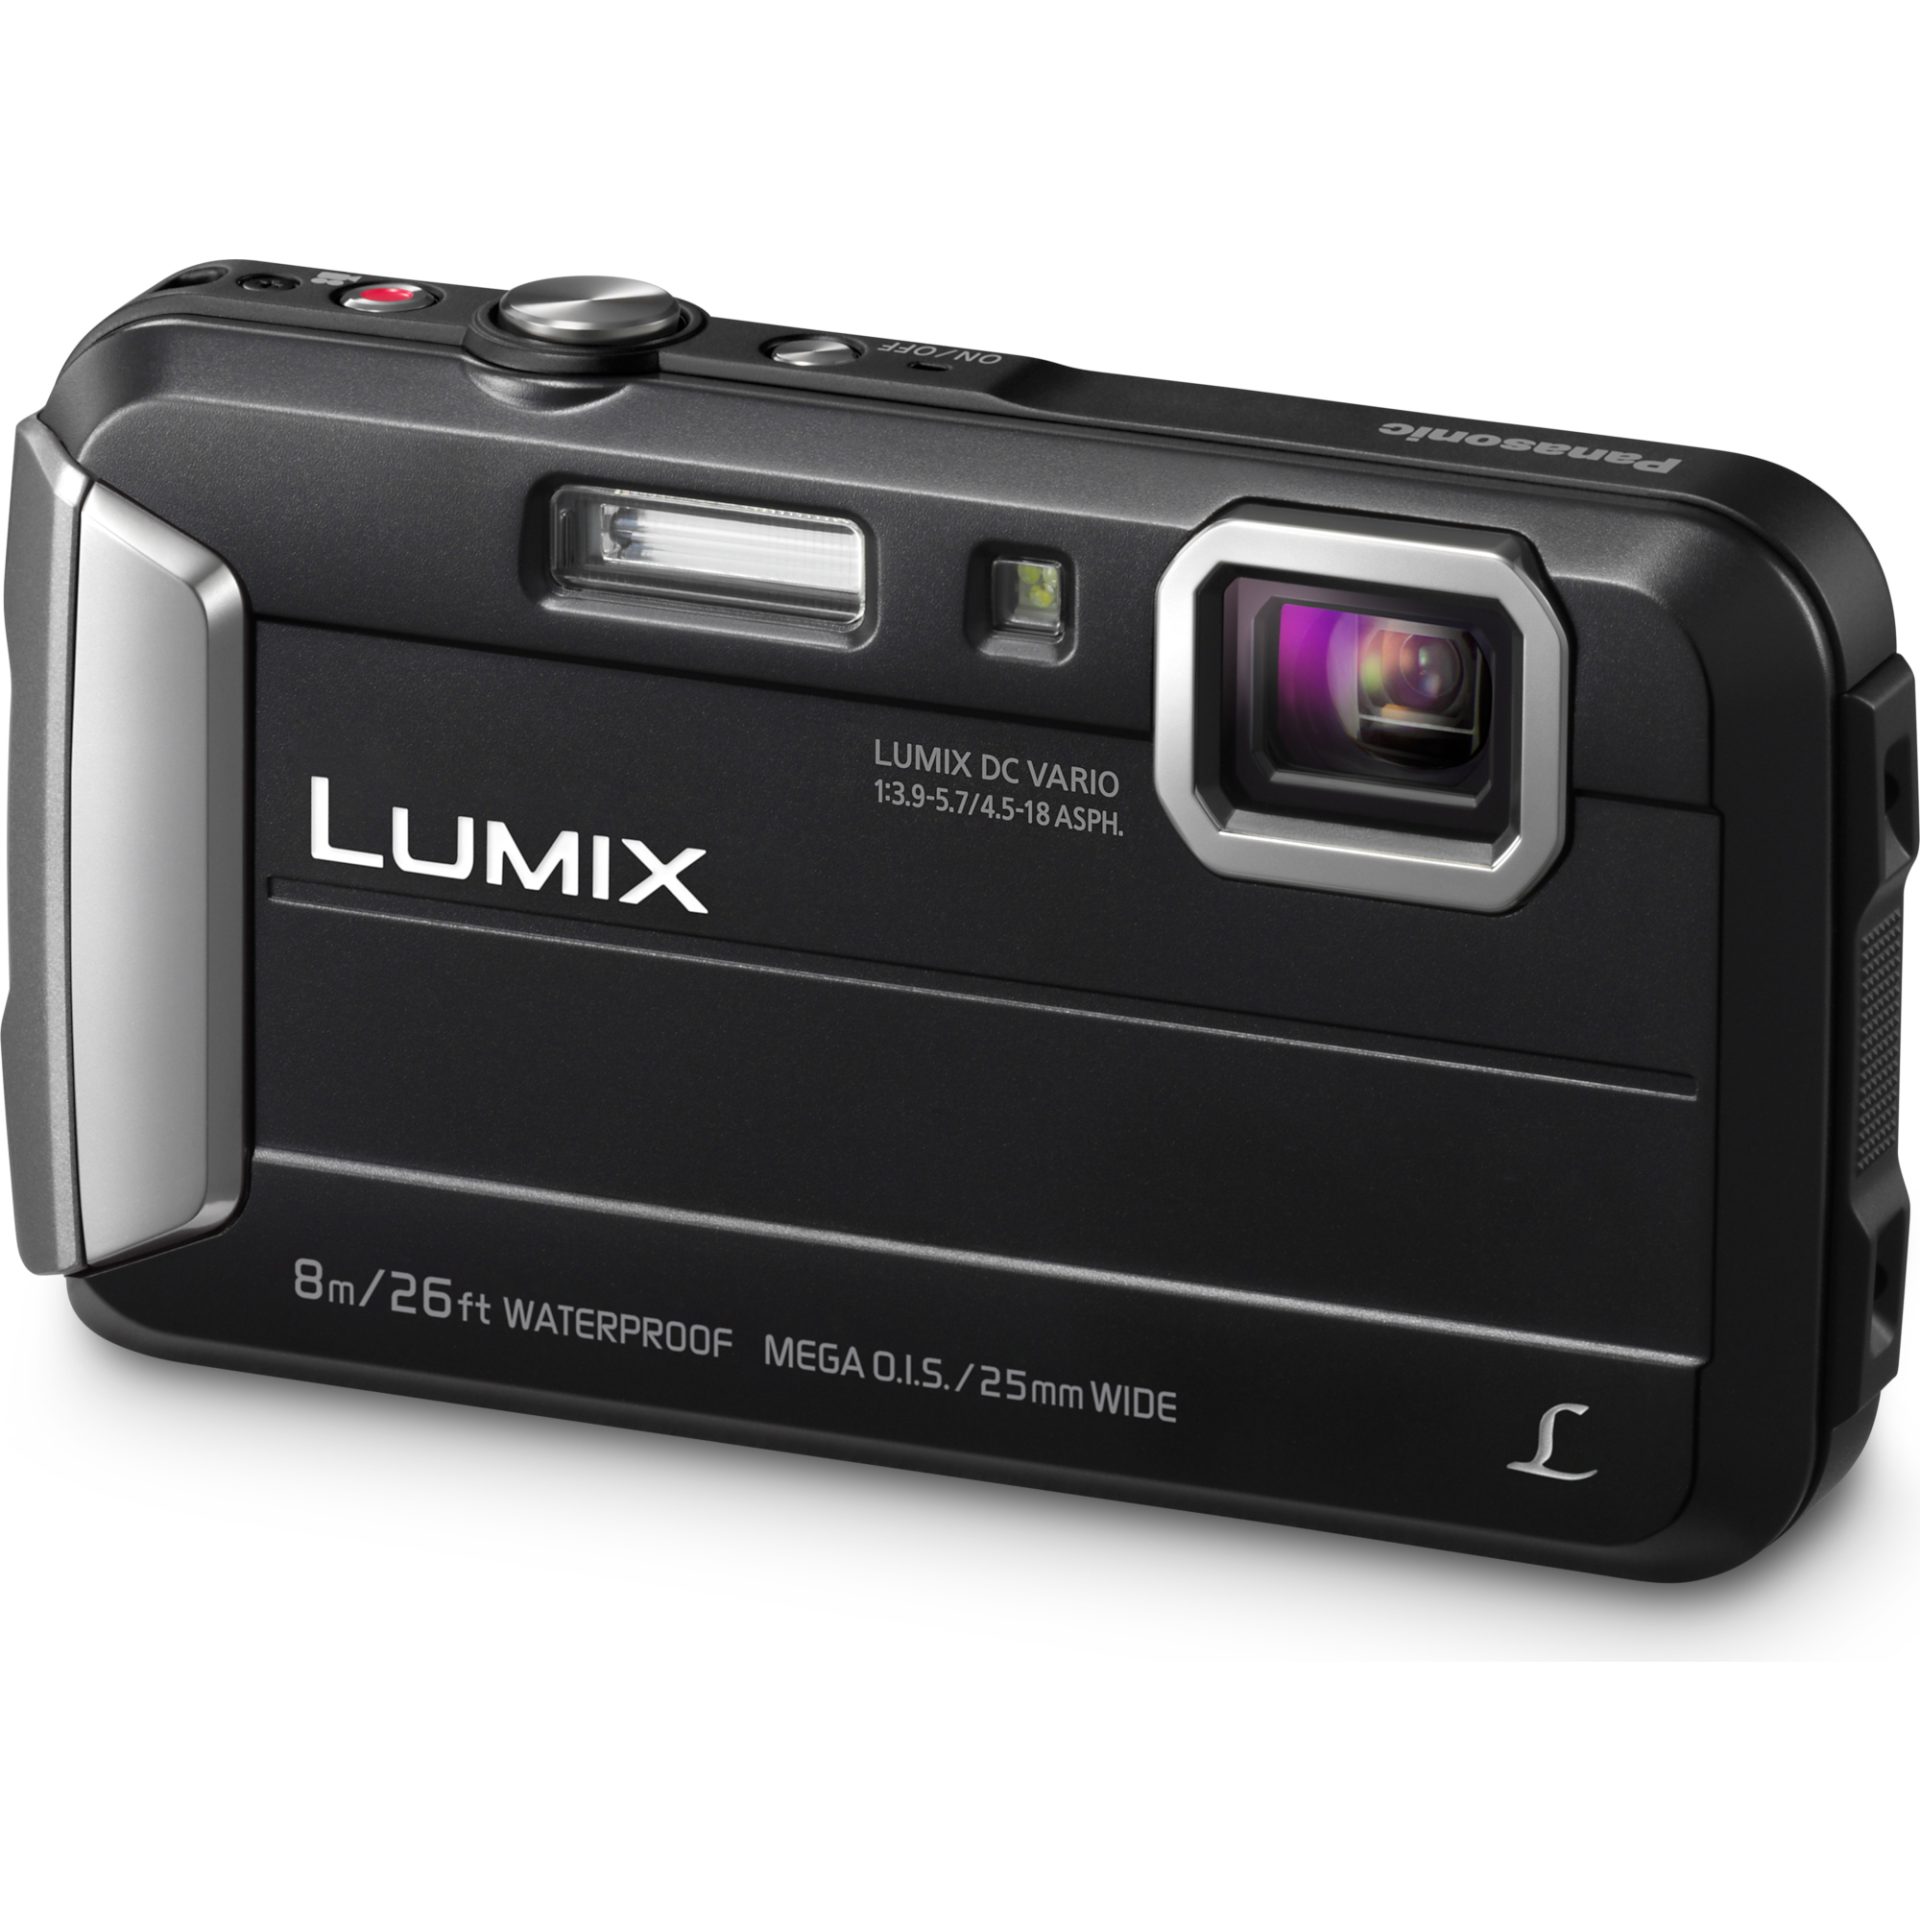 DMC-FT30 Lumix kompaktní fotoaparát (vodotěsný až 8m, nárazuvzdorný a mrazuvzdorný, 220MB paměť, mega HD video), černá » Značkový obchod Panasonic